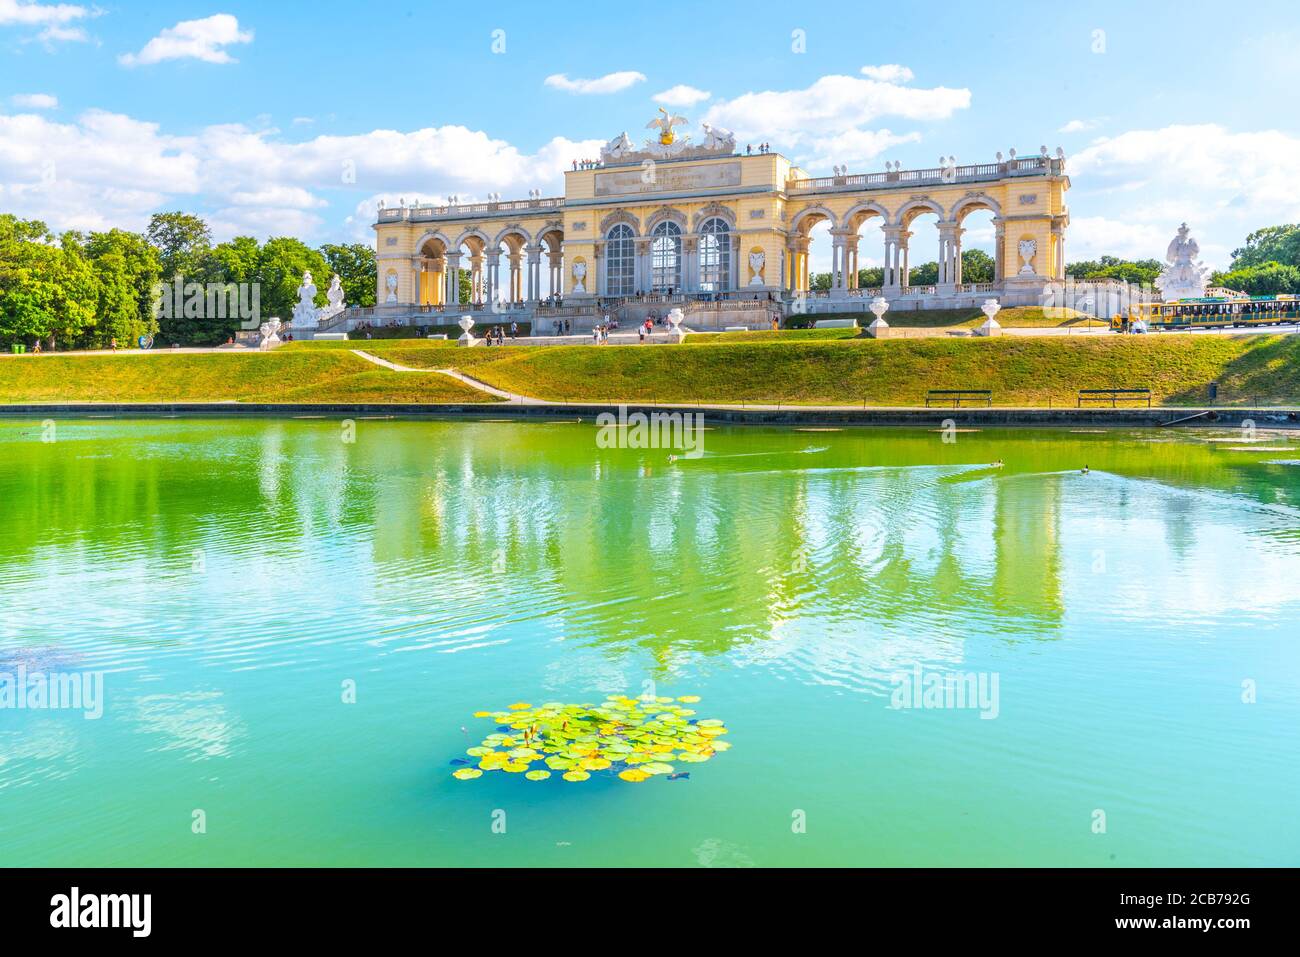 VIENA, AUSTRIA - 23 DE JULIO de 2019: La Gloriette en los Jardines del Palacio de Schonbrunn, Viena, Austria. Vista frontal y reflexión sobre el agua. Foto de stock